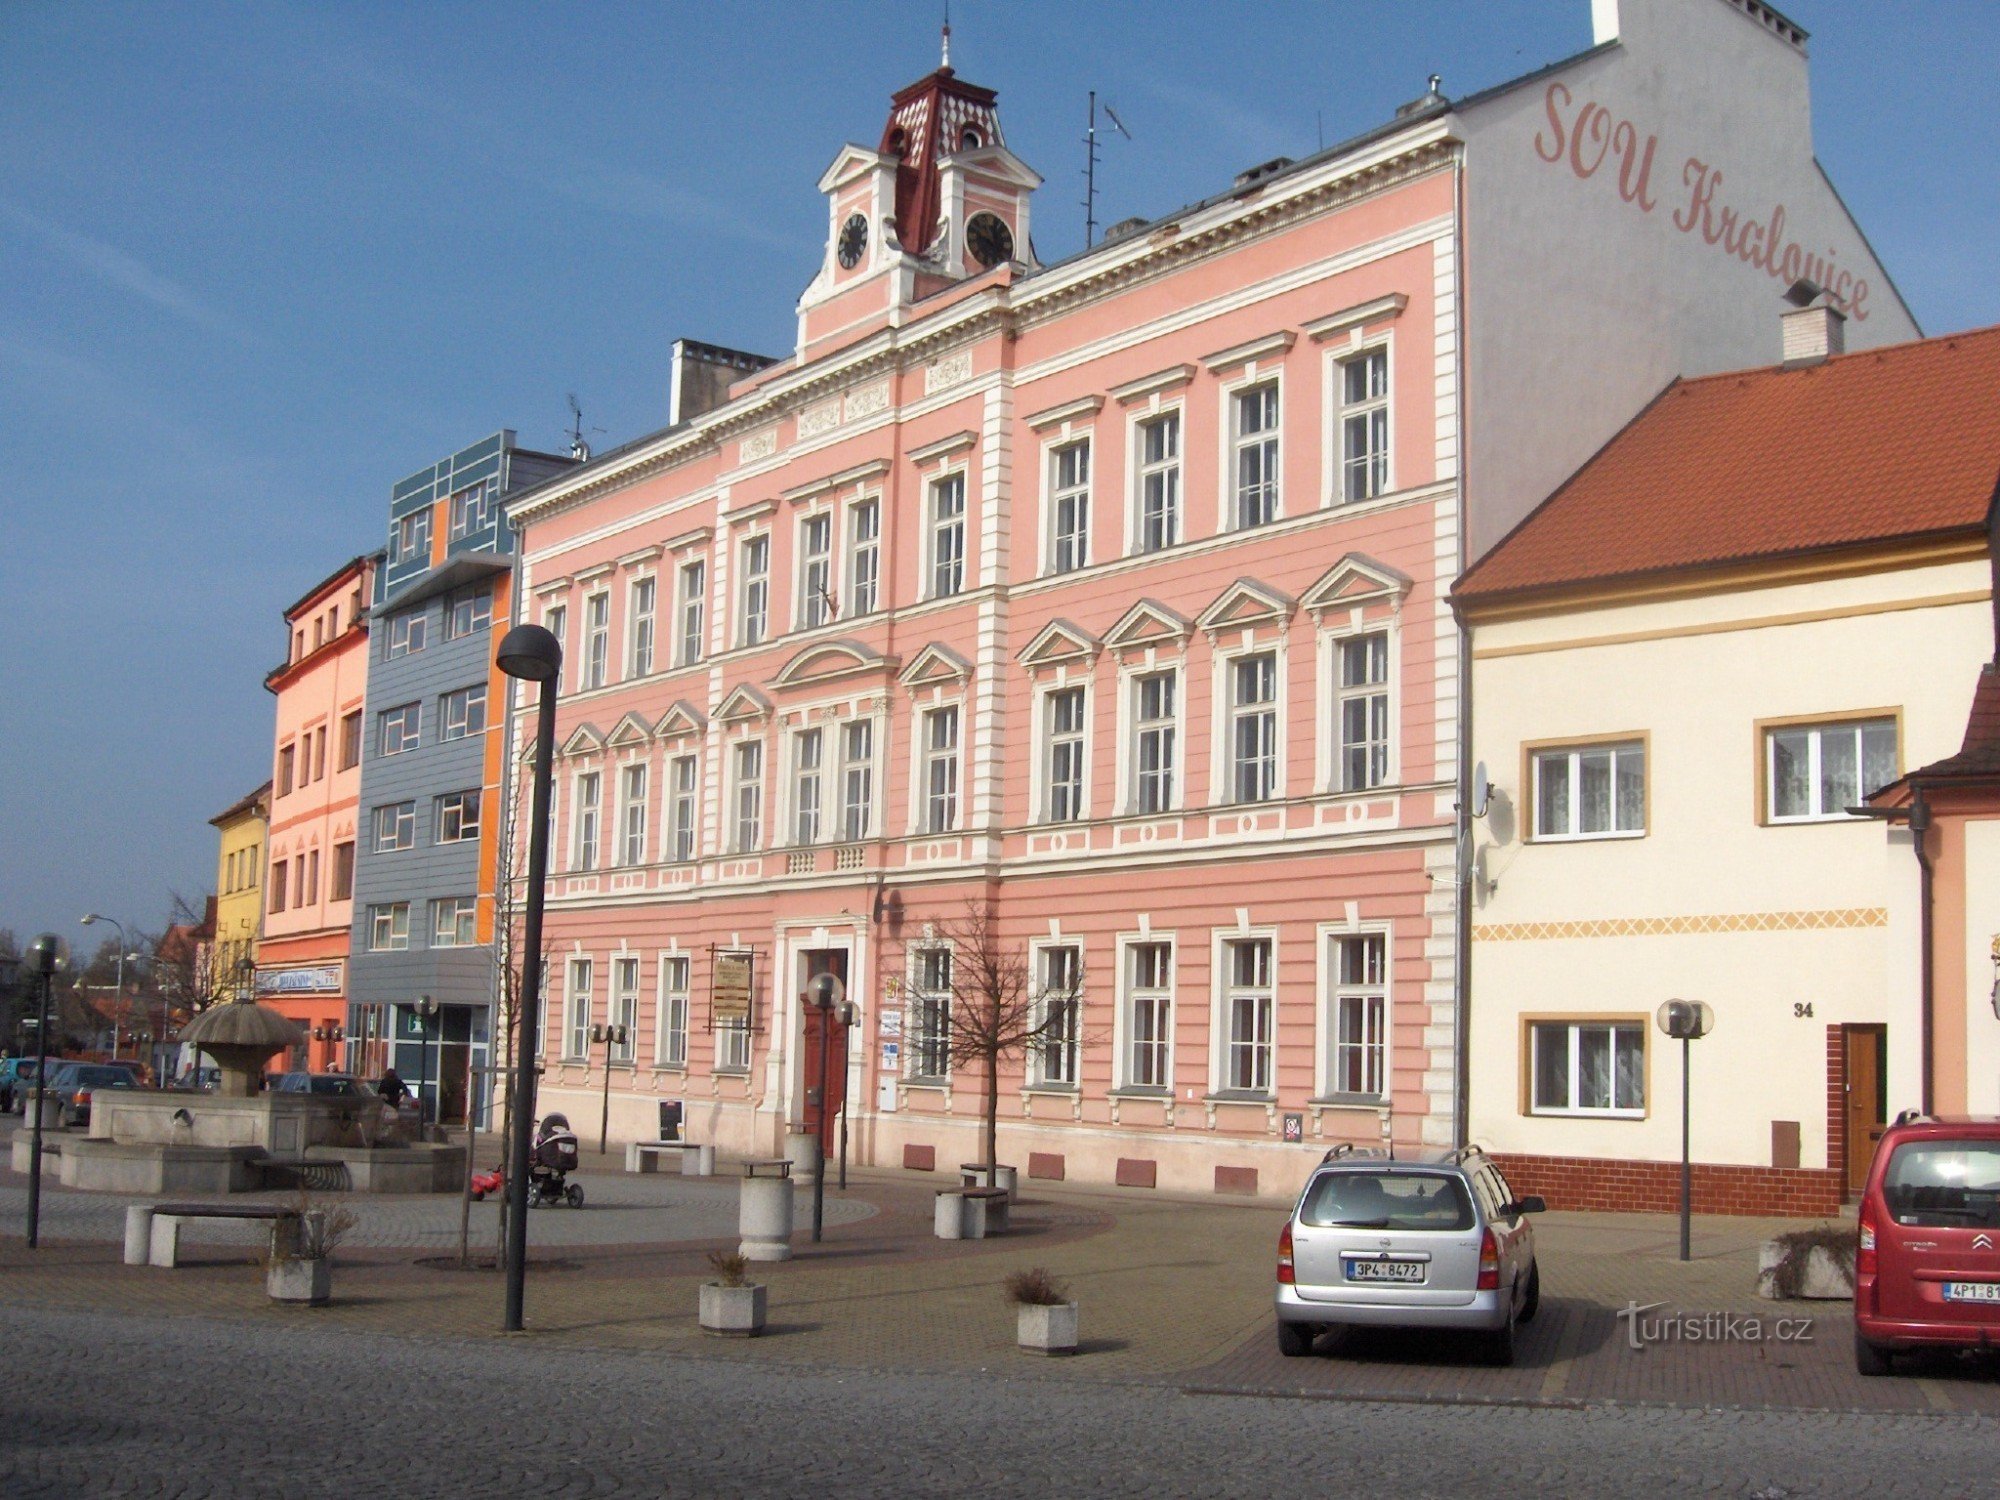 Place Kralovice